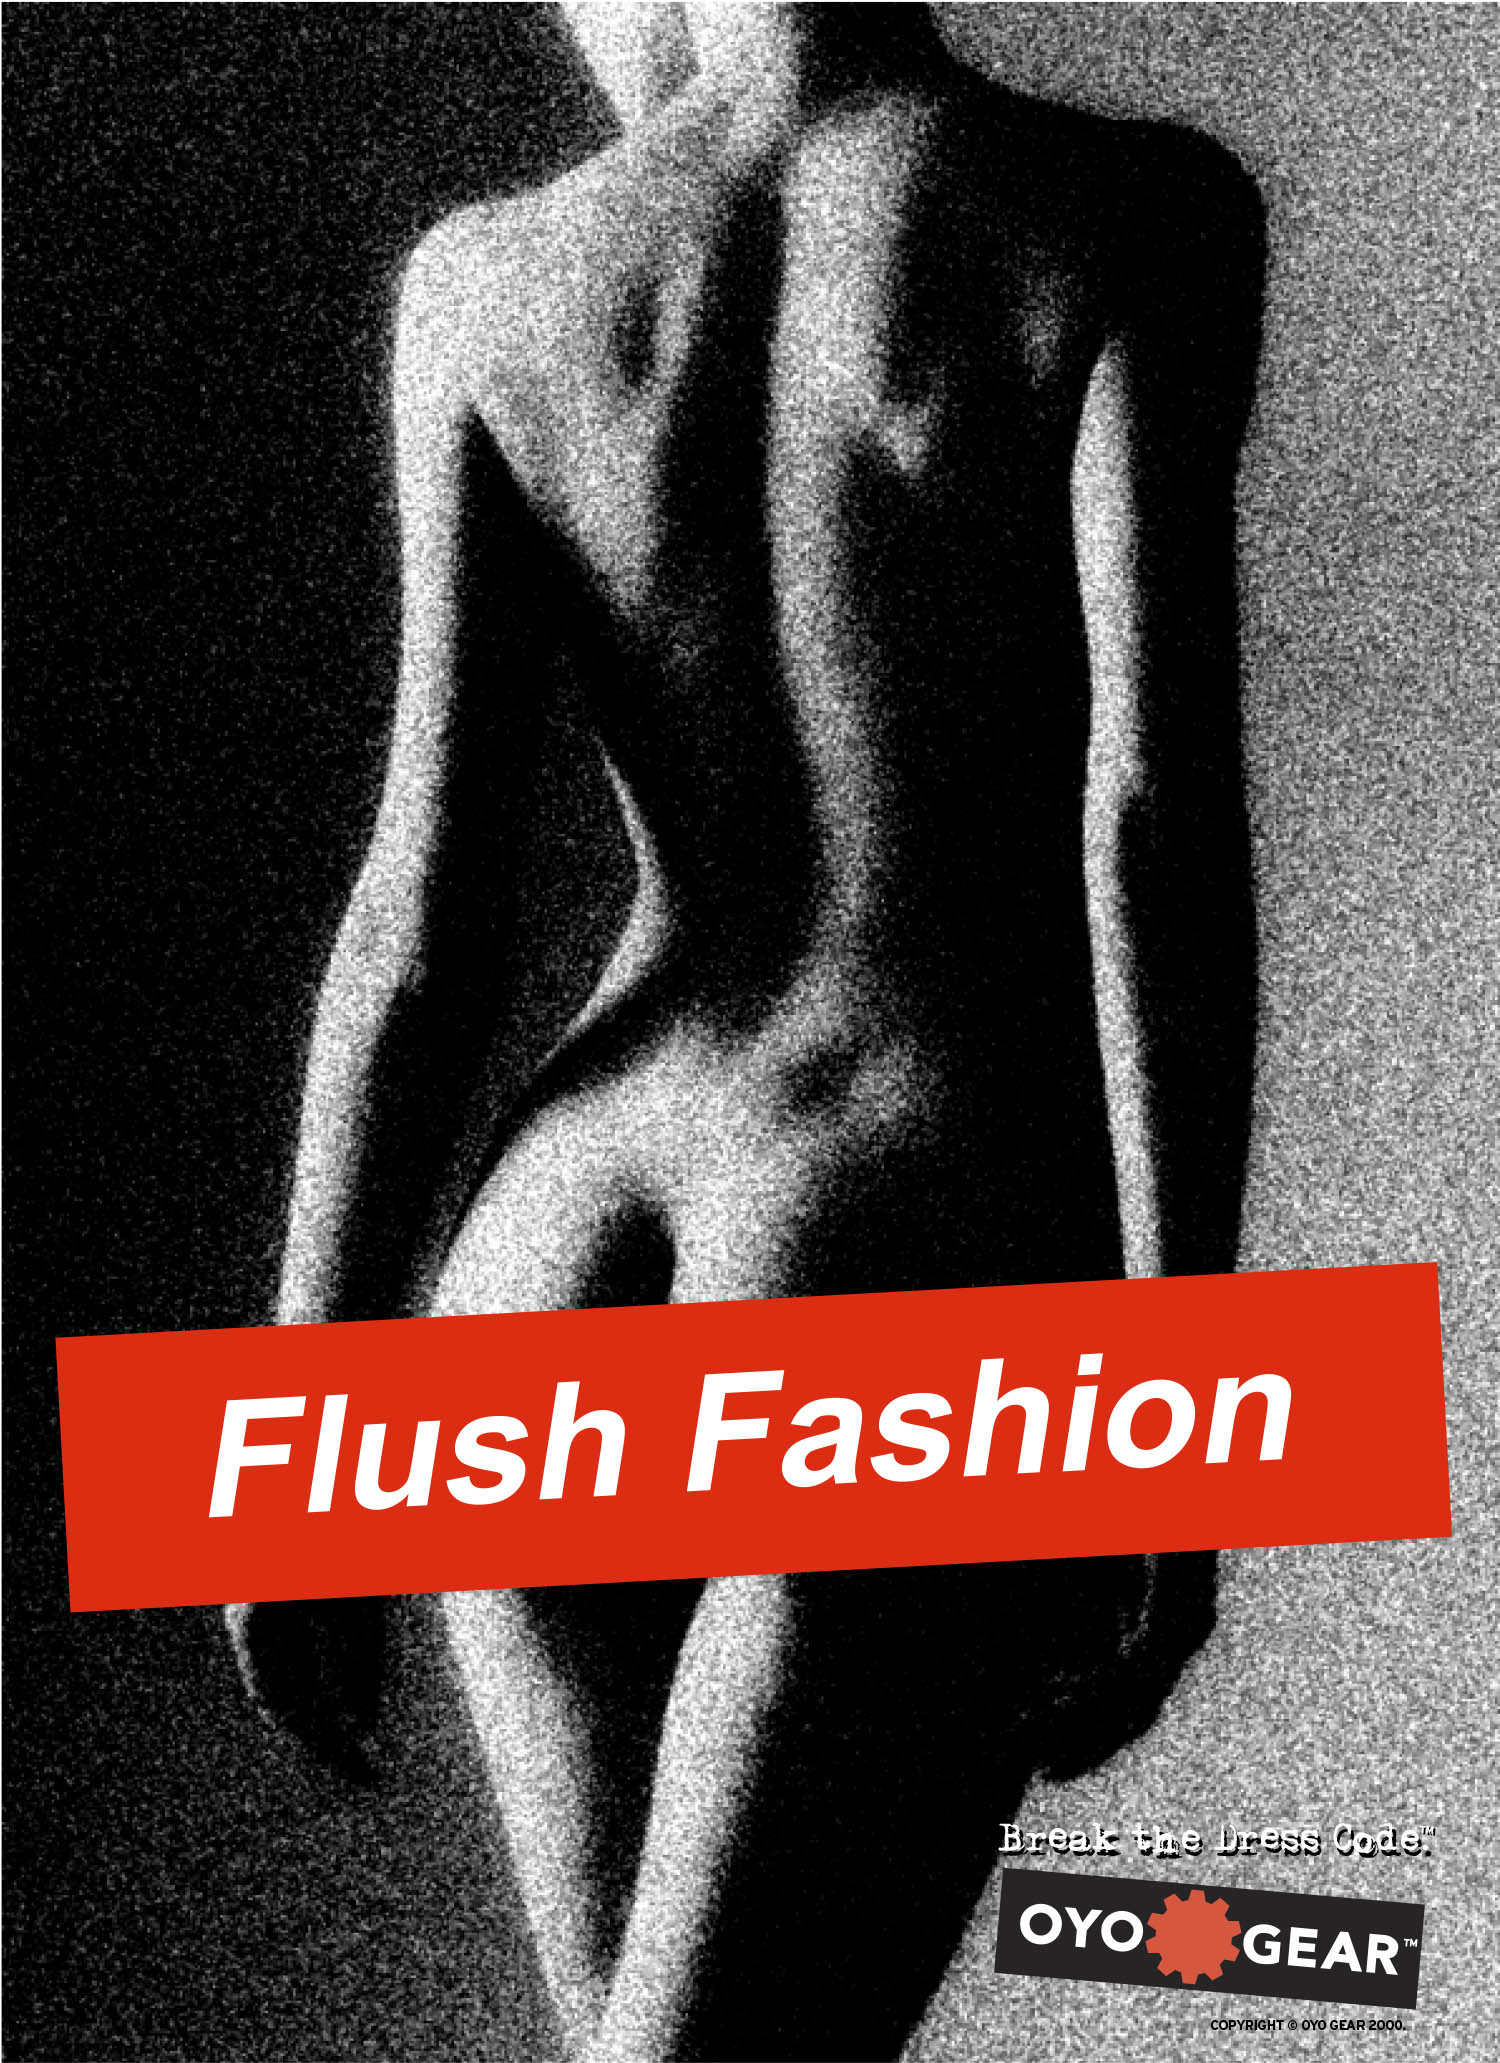 OYO Gear Flush Fashion Ad